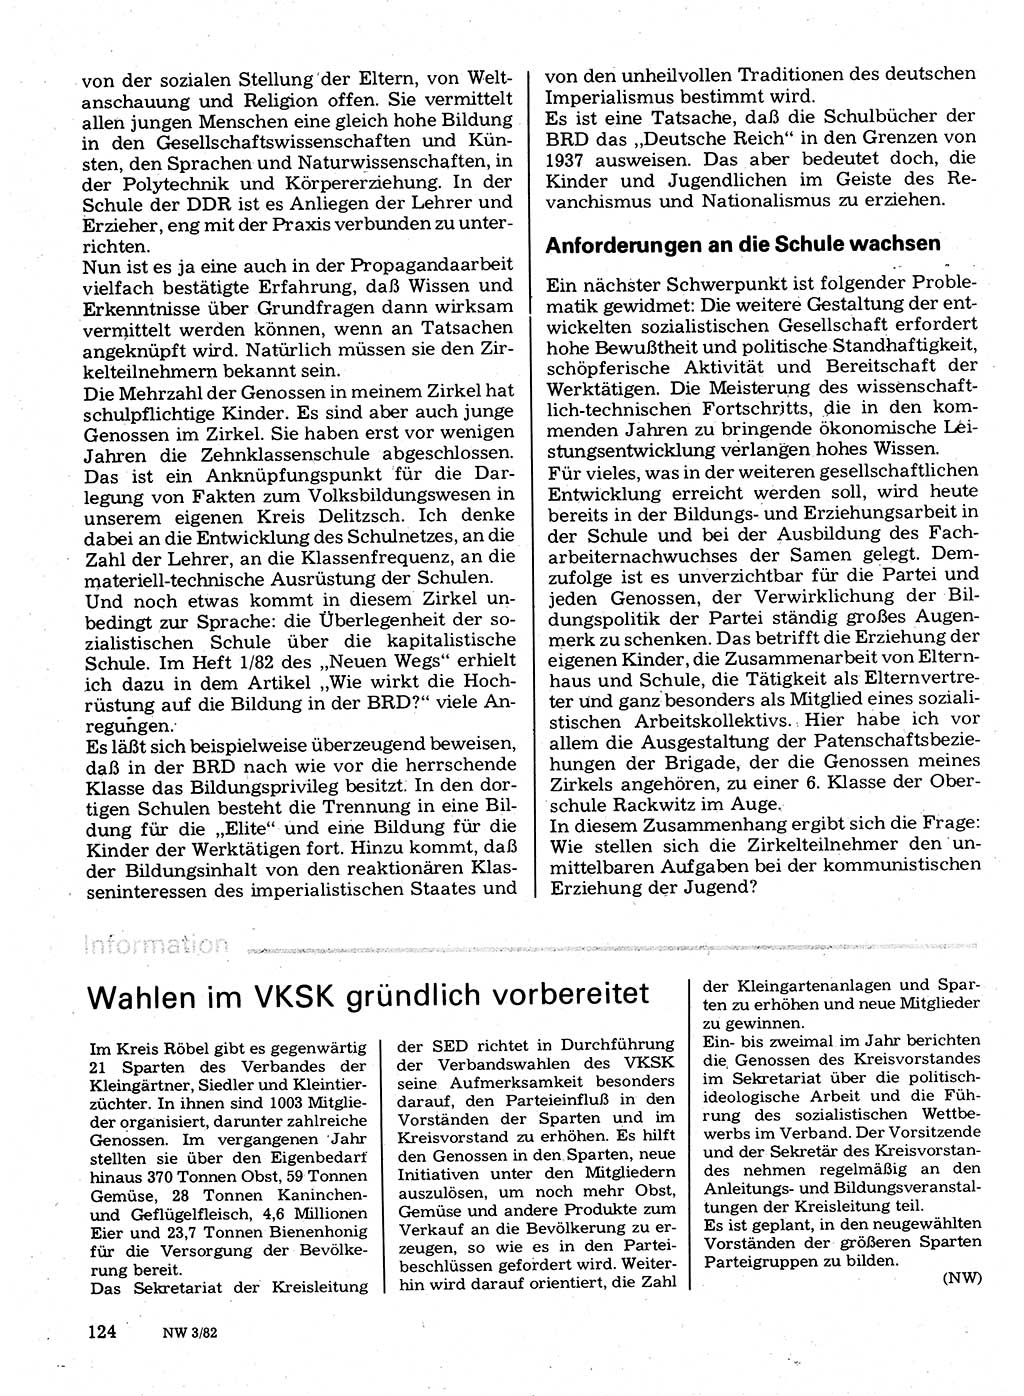 Neuer Weg (NW), Organ des Zentralkomitees (ZK) der SED (Sozialistische Einheitspartei Deutschlands) für Fragen des Parteilebens, 37. Jahrgang [Deutsche Demokratische Republik (DDR)] 1982, Seite 124 (NW ZK SED DDR 1982, S. 124)